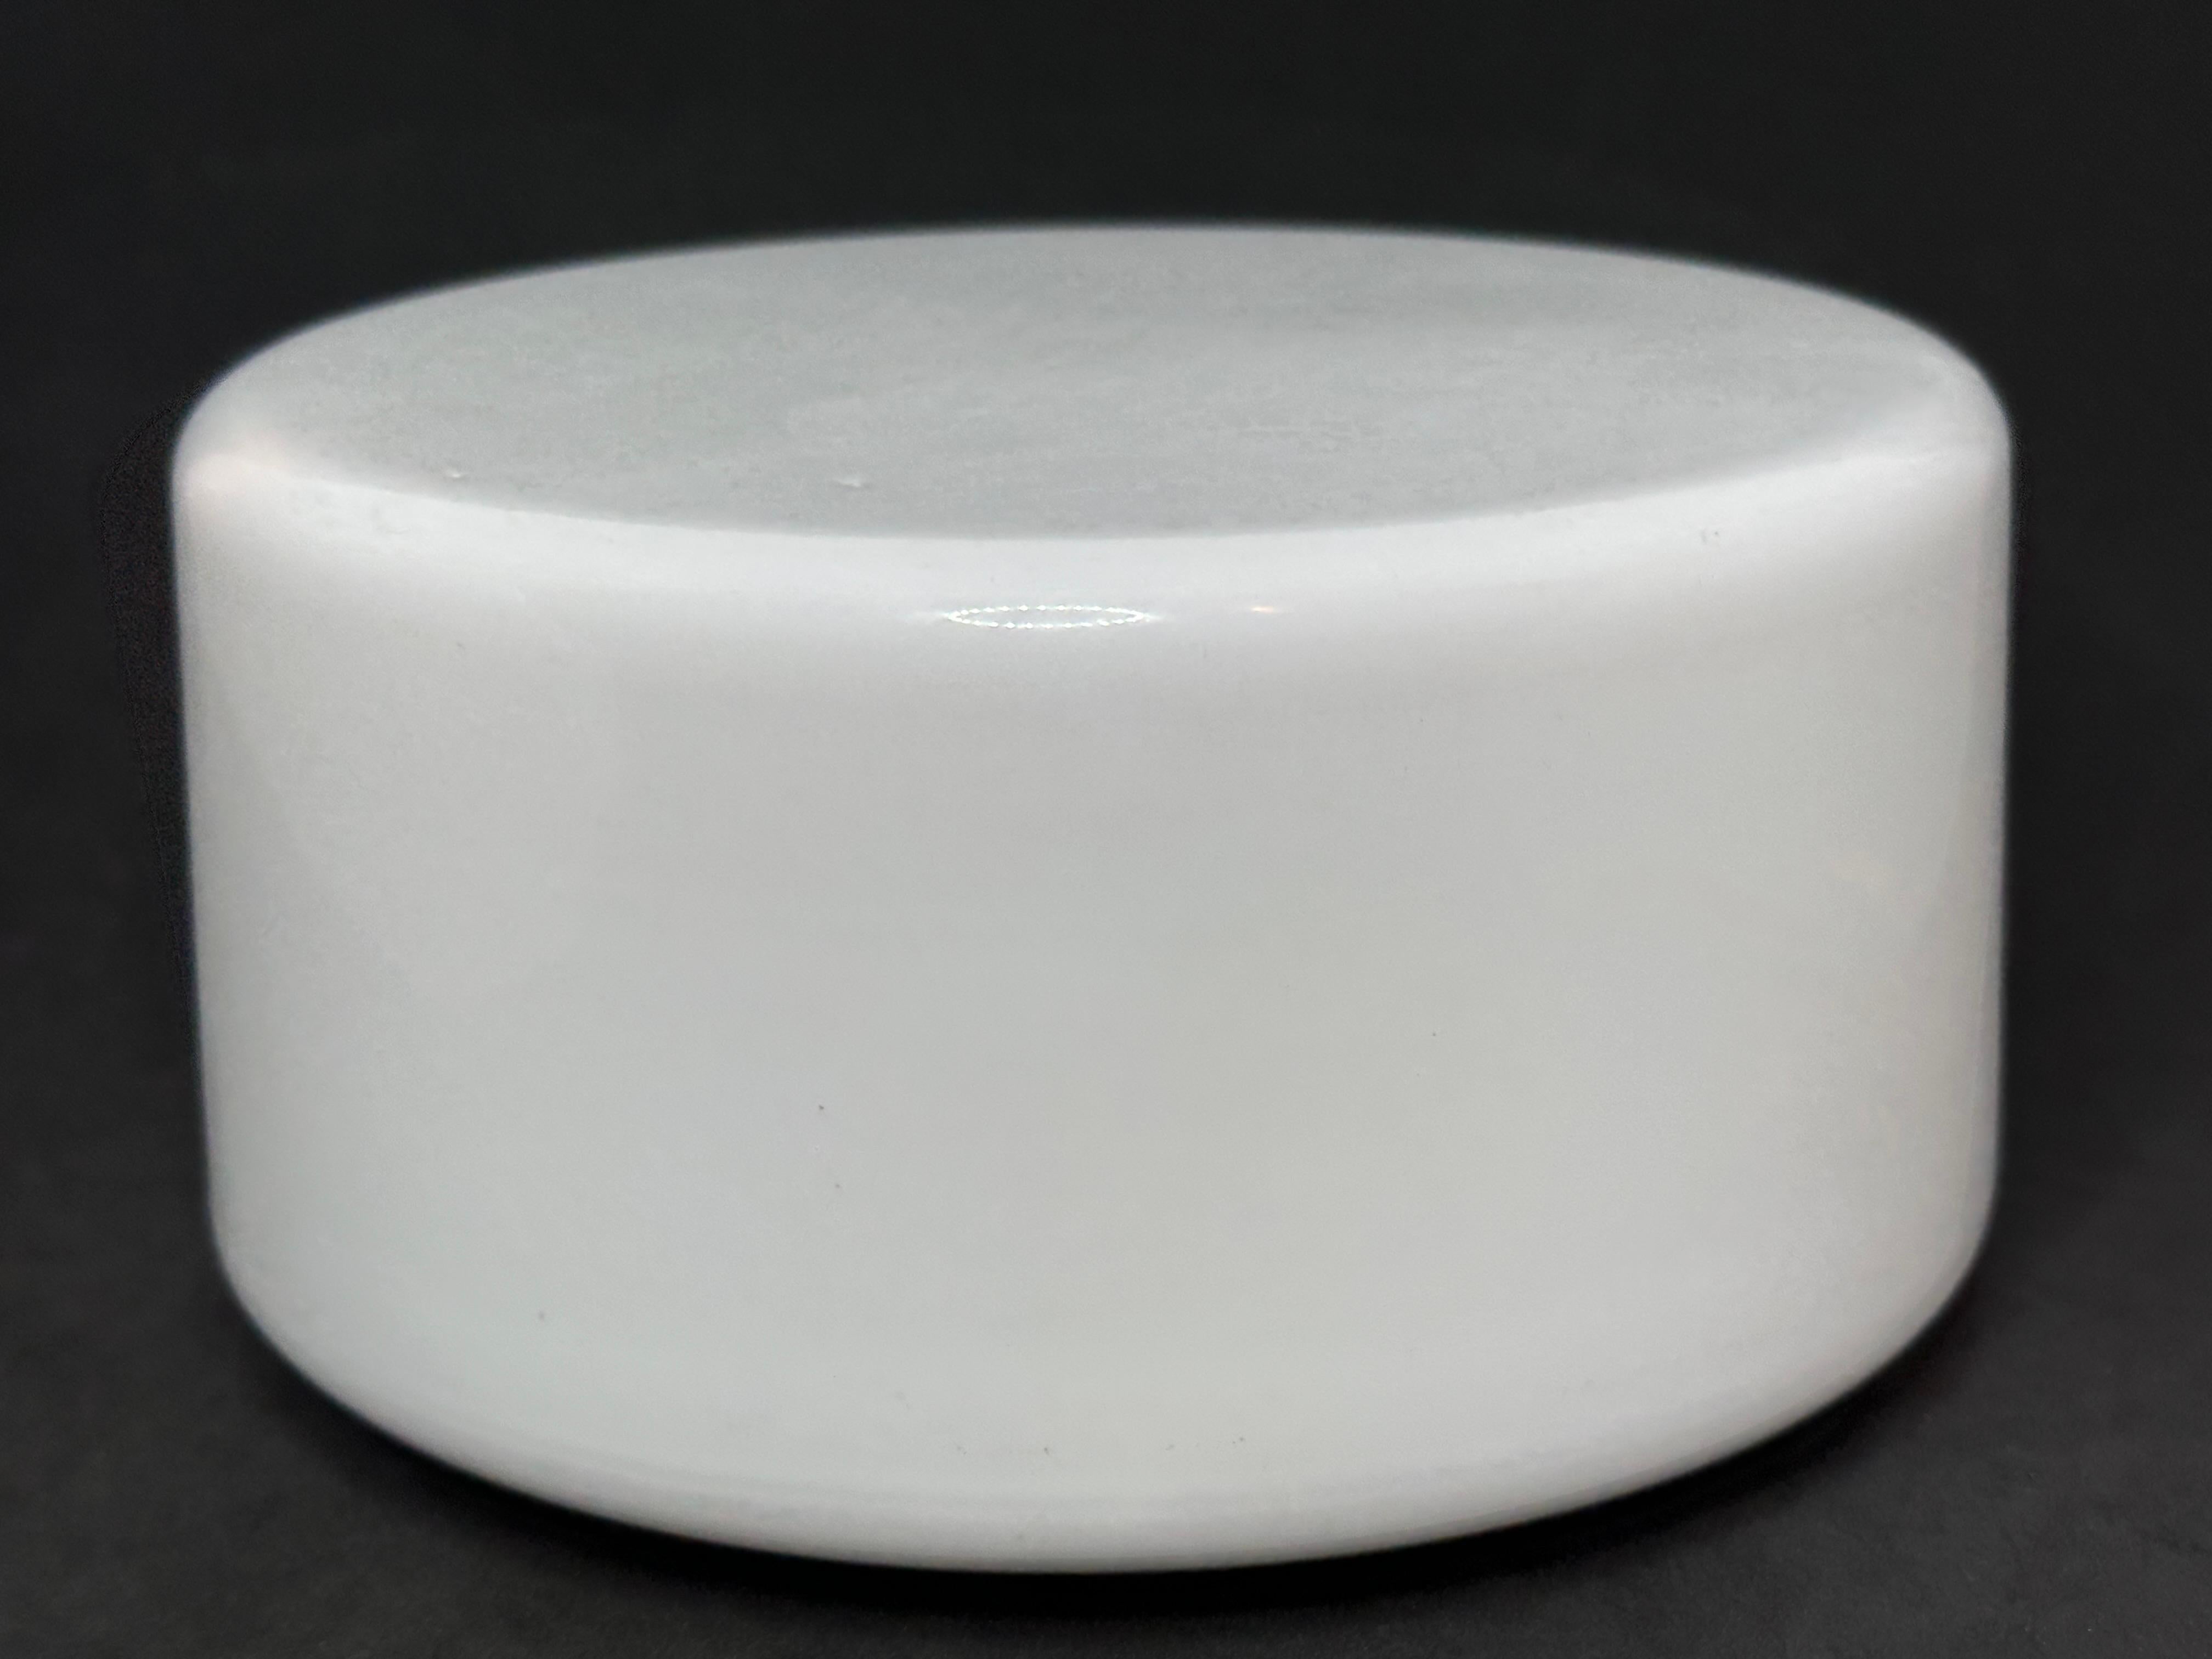 Eine zierliche Leuchte aus weißem Opal- oder Milchglas für die Unterputzmontage. Hergestellt in Deutschland von RZB Leuchten. Wunderschöner Glaseinbau mit Metallbefestigung. Die Leuchte benötigt eine europäische E14 / 110 Volt Candelabra-Glühbirne,